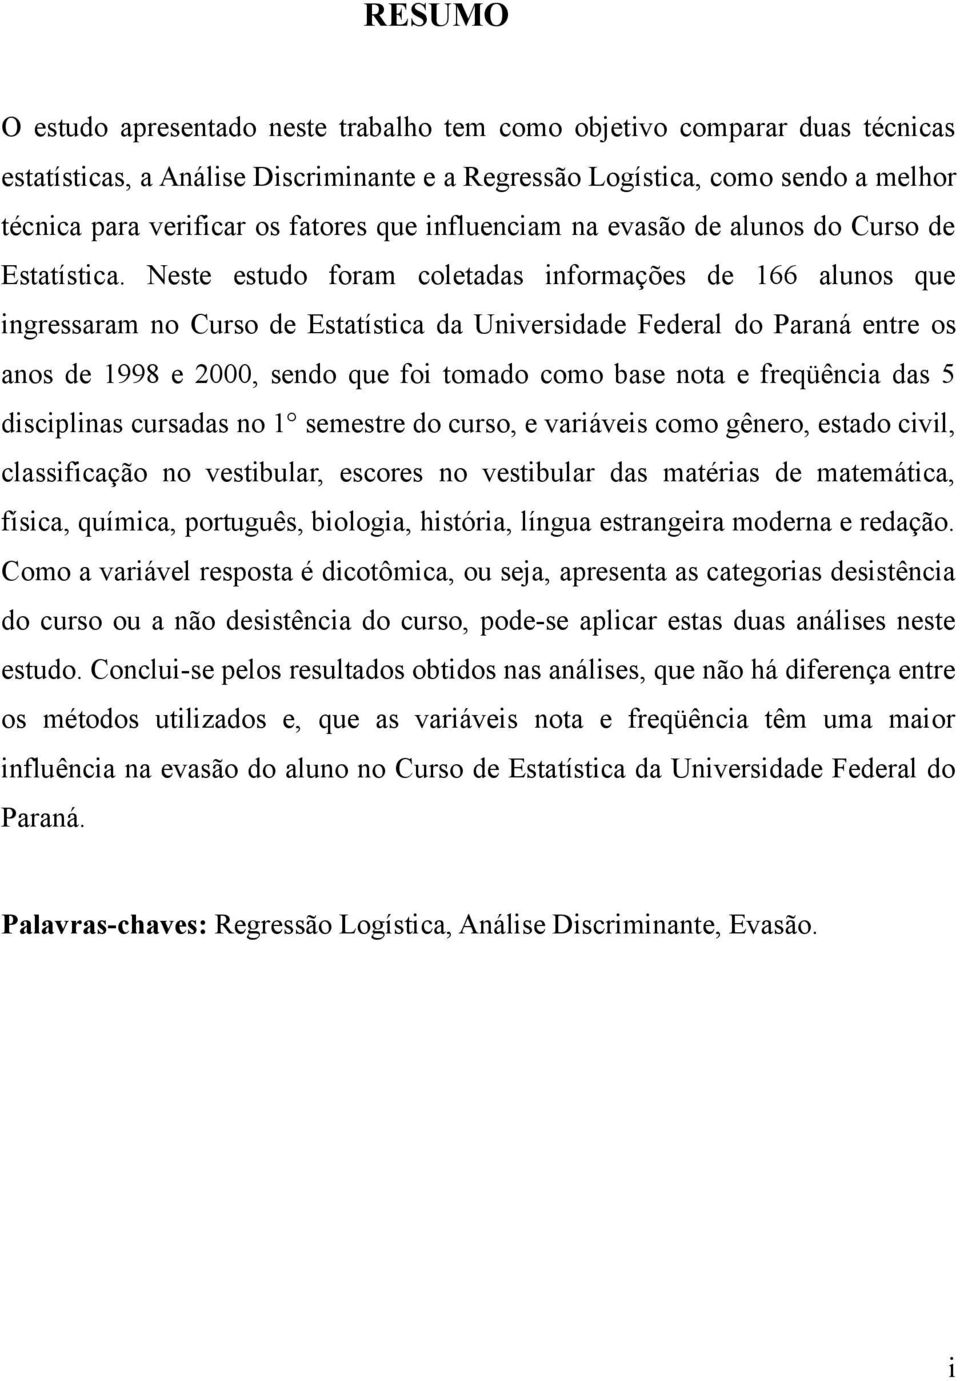 Neste estudo foram coletadas informações de 166 alunos que ingressaram no Curso de Estatística da Universidade Federal do Paraná entre os anos de 1998 e 2000, sendo que foi tomado como base nota e